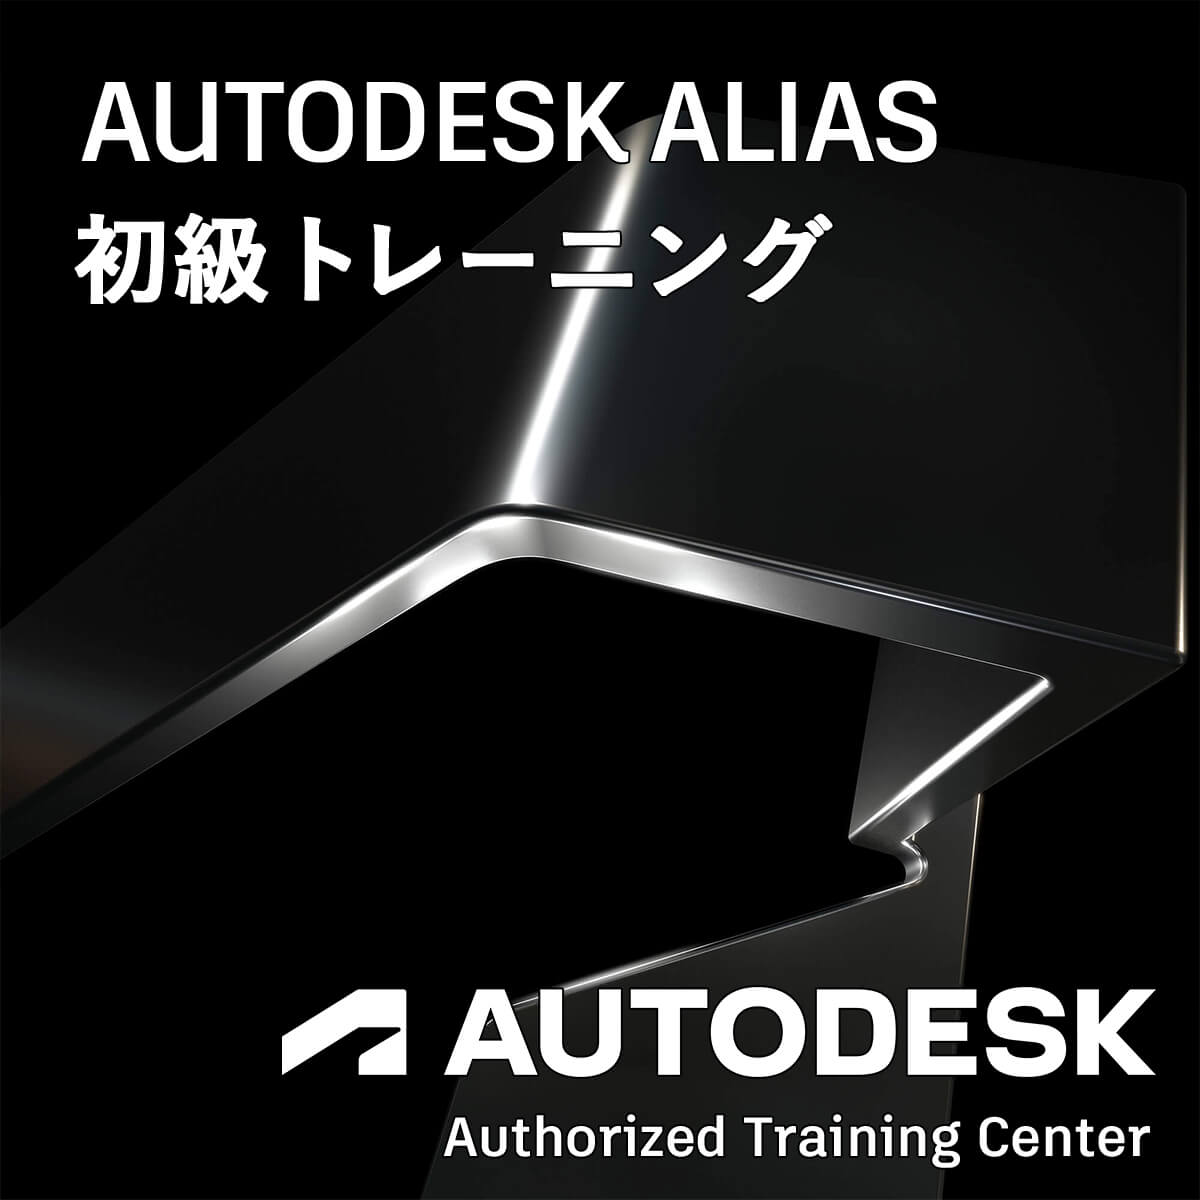 Autodesk Alias 初級トレーニング